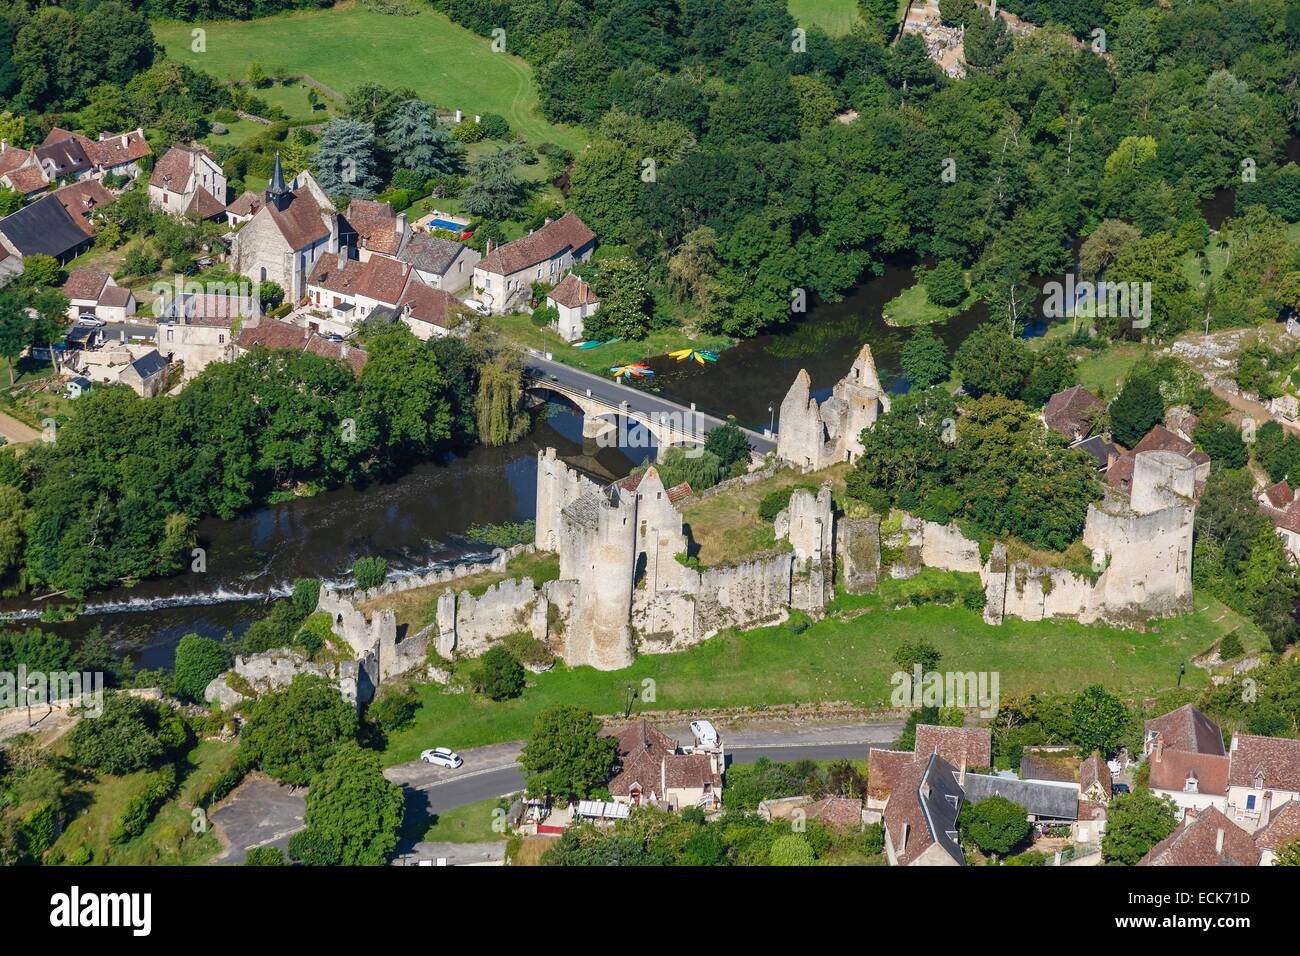 France, Vienne, Angles sur l'Anglin, labelled Les Plus Beaux Villages de France (The MoSaint Beautiful Villages of France), the castle and l'Anglin river (aerial view) Stock Photo